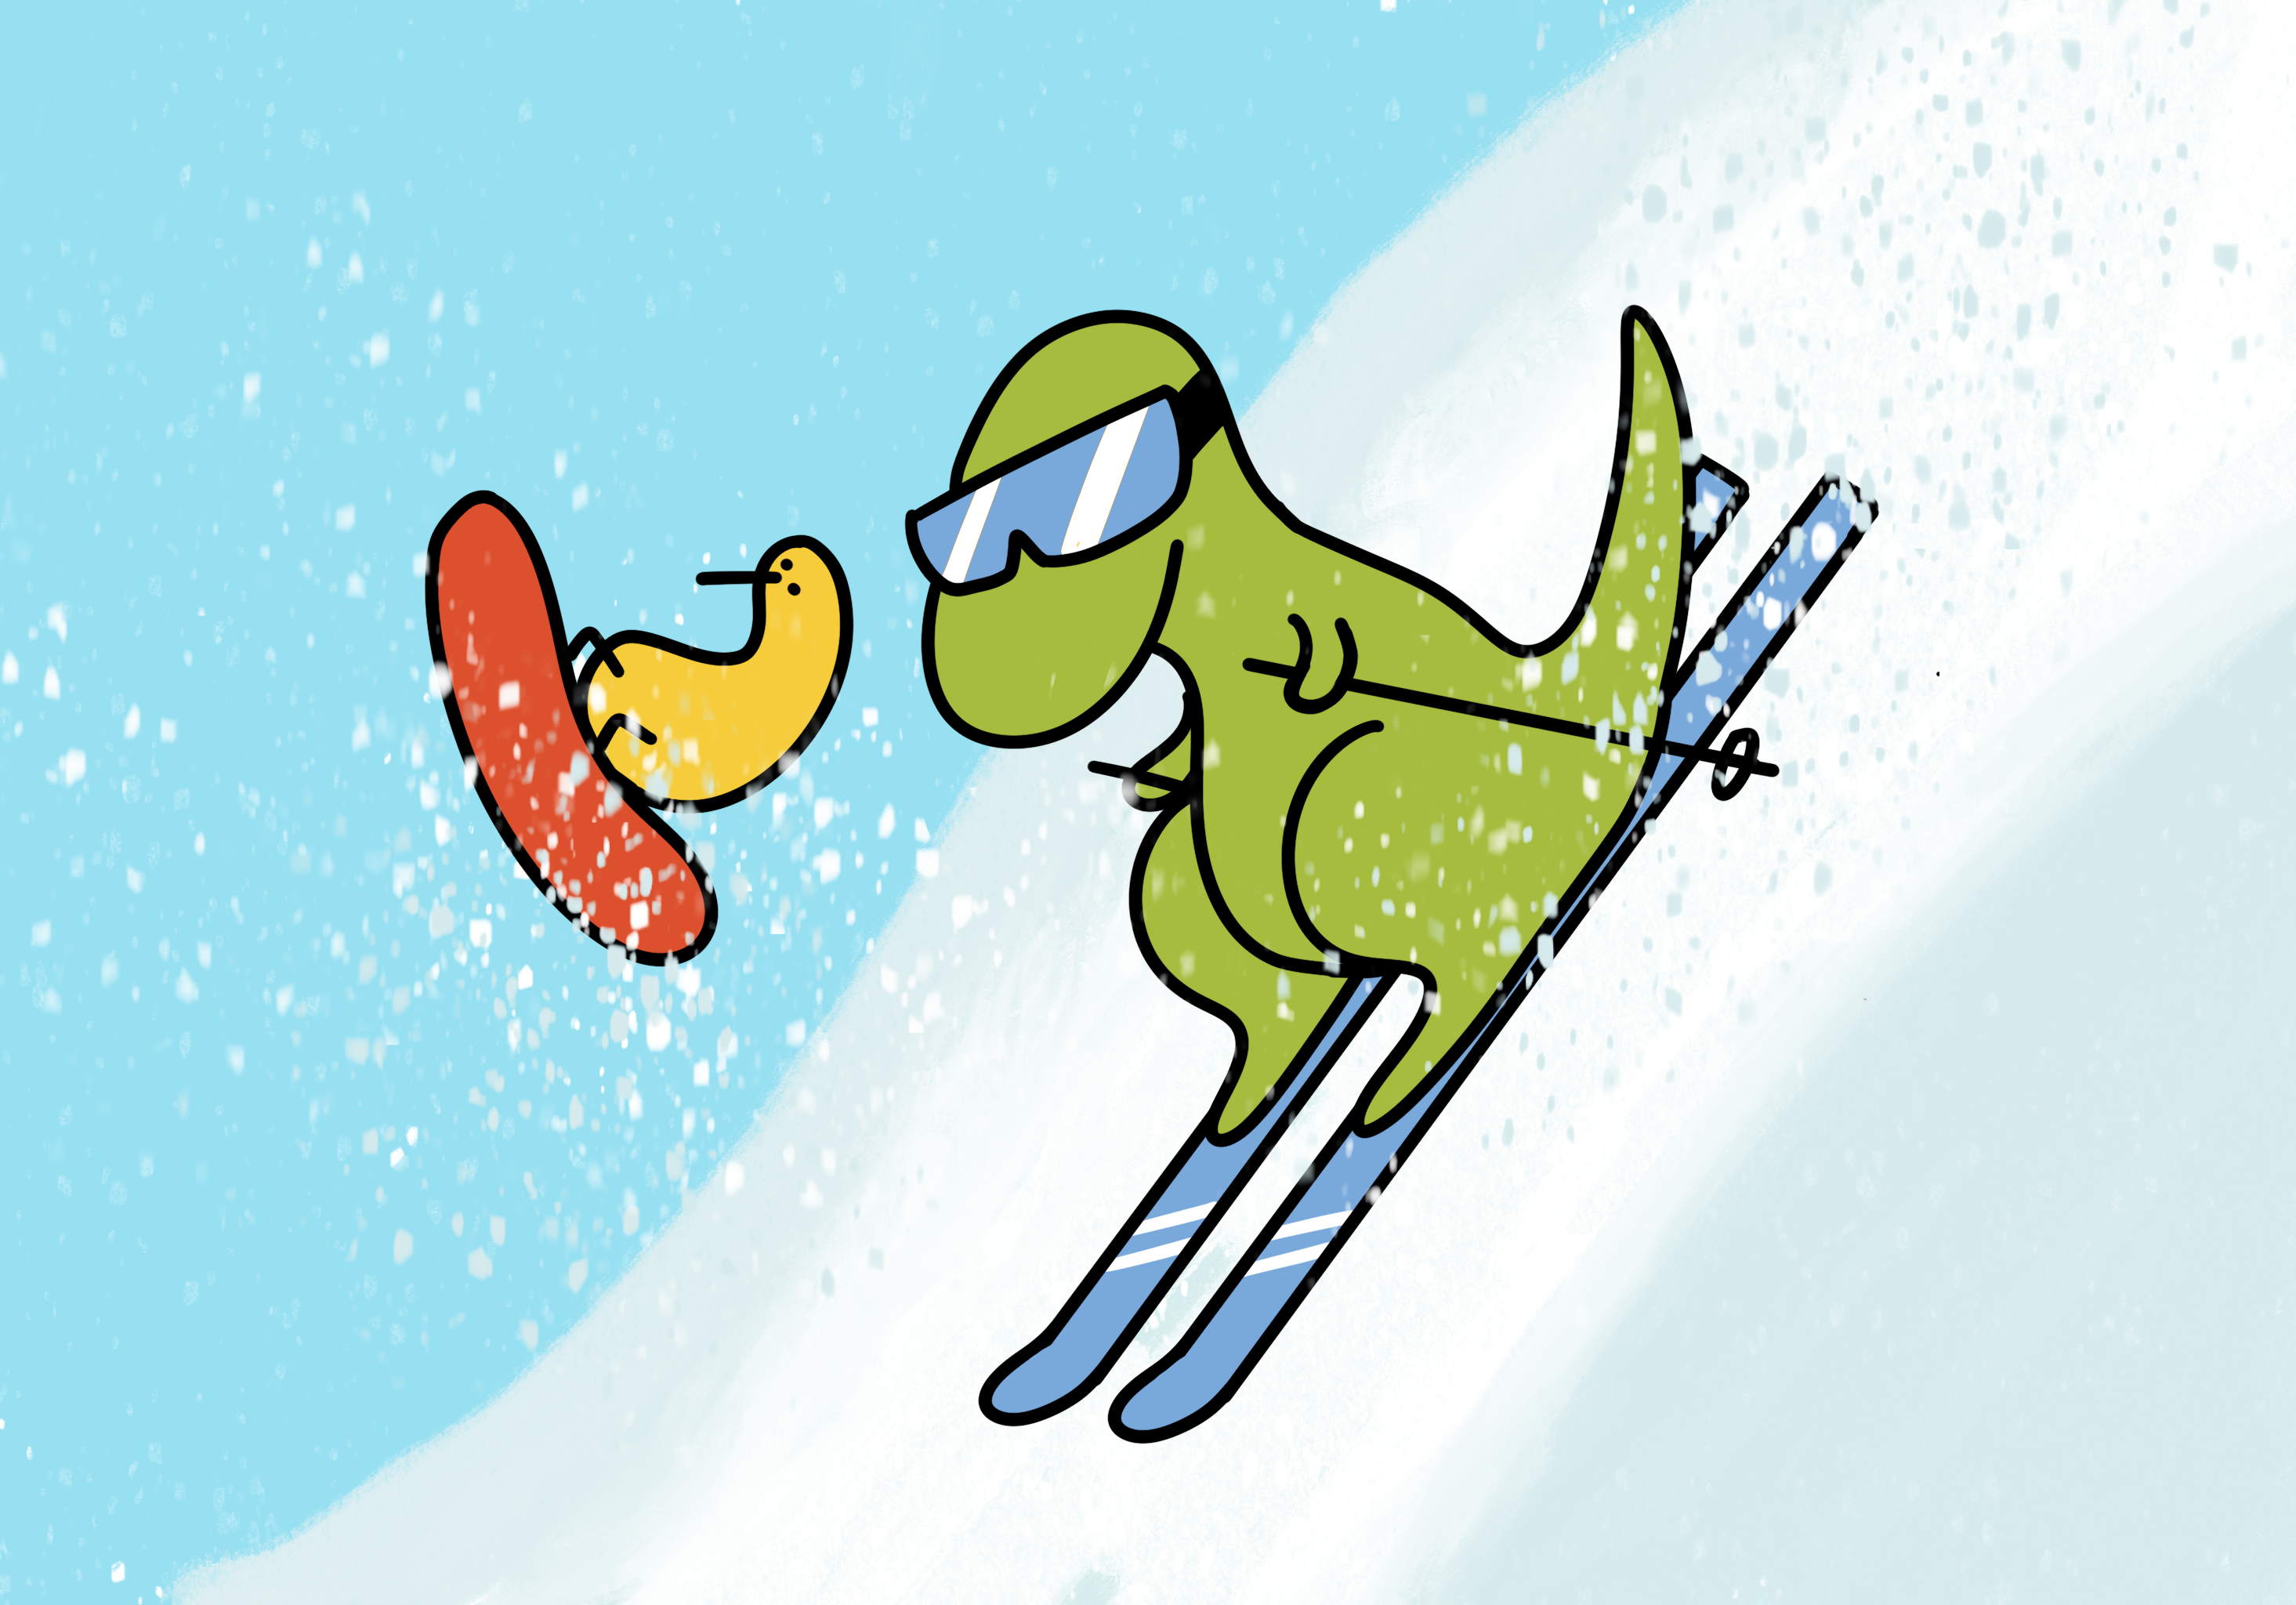 skiing with kiwi